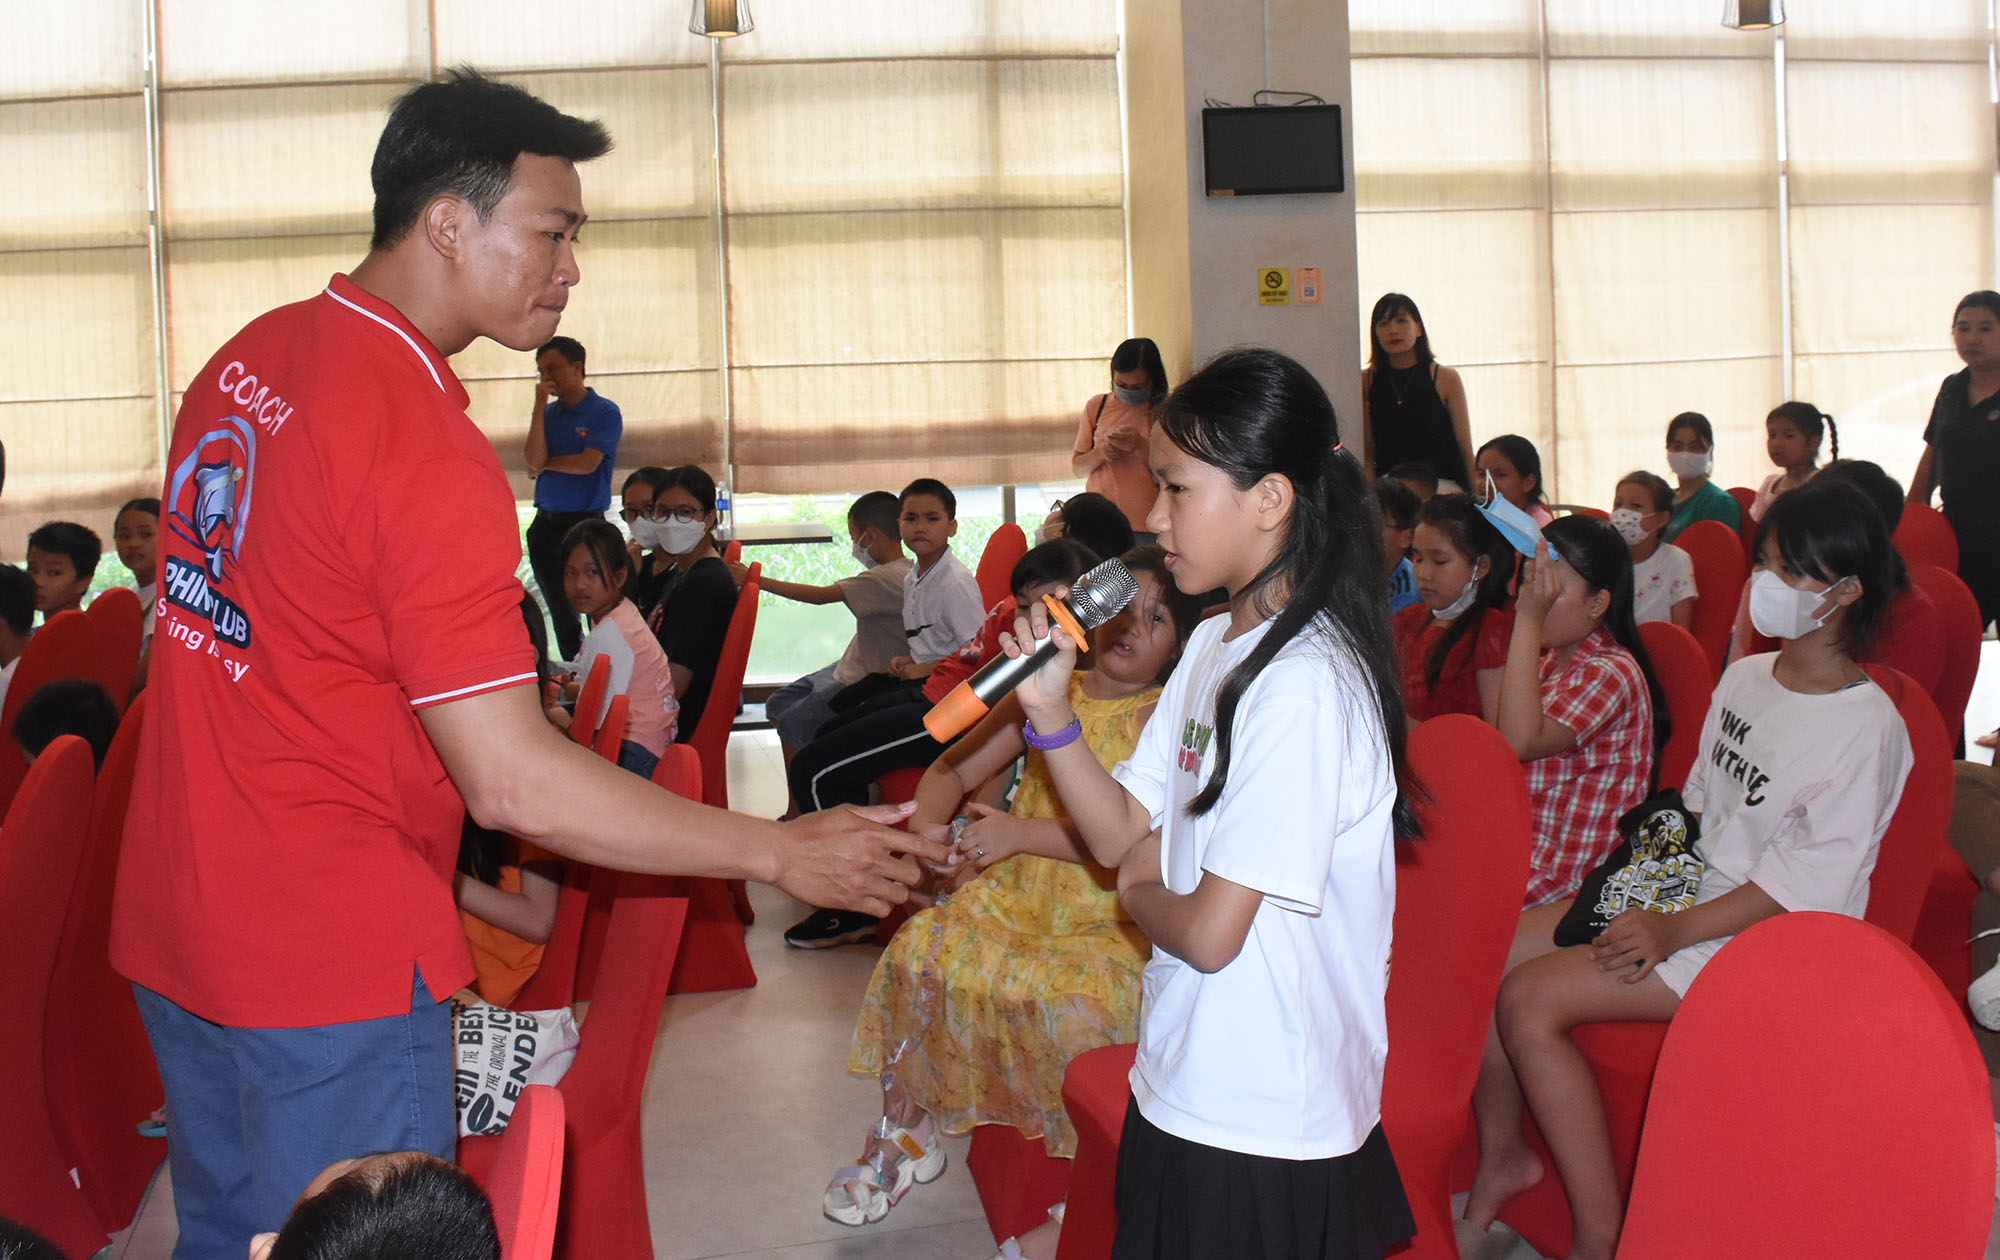 HLV bơi lội Trần Văn Chính đặt câu hỏi với các em học sinh về việc xử lý tình huống như thế nào khi bị đuối nước